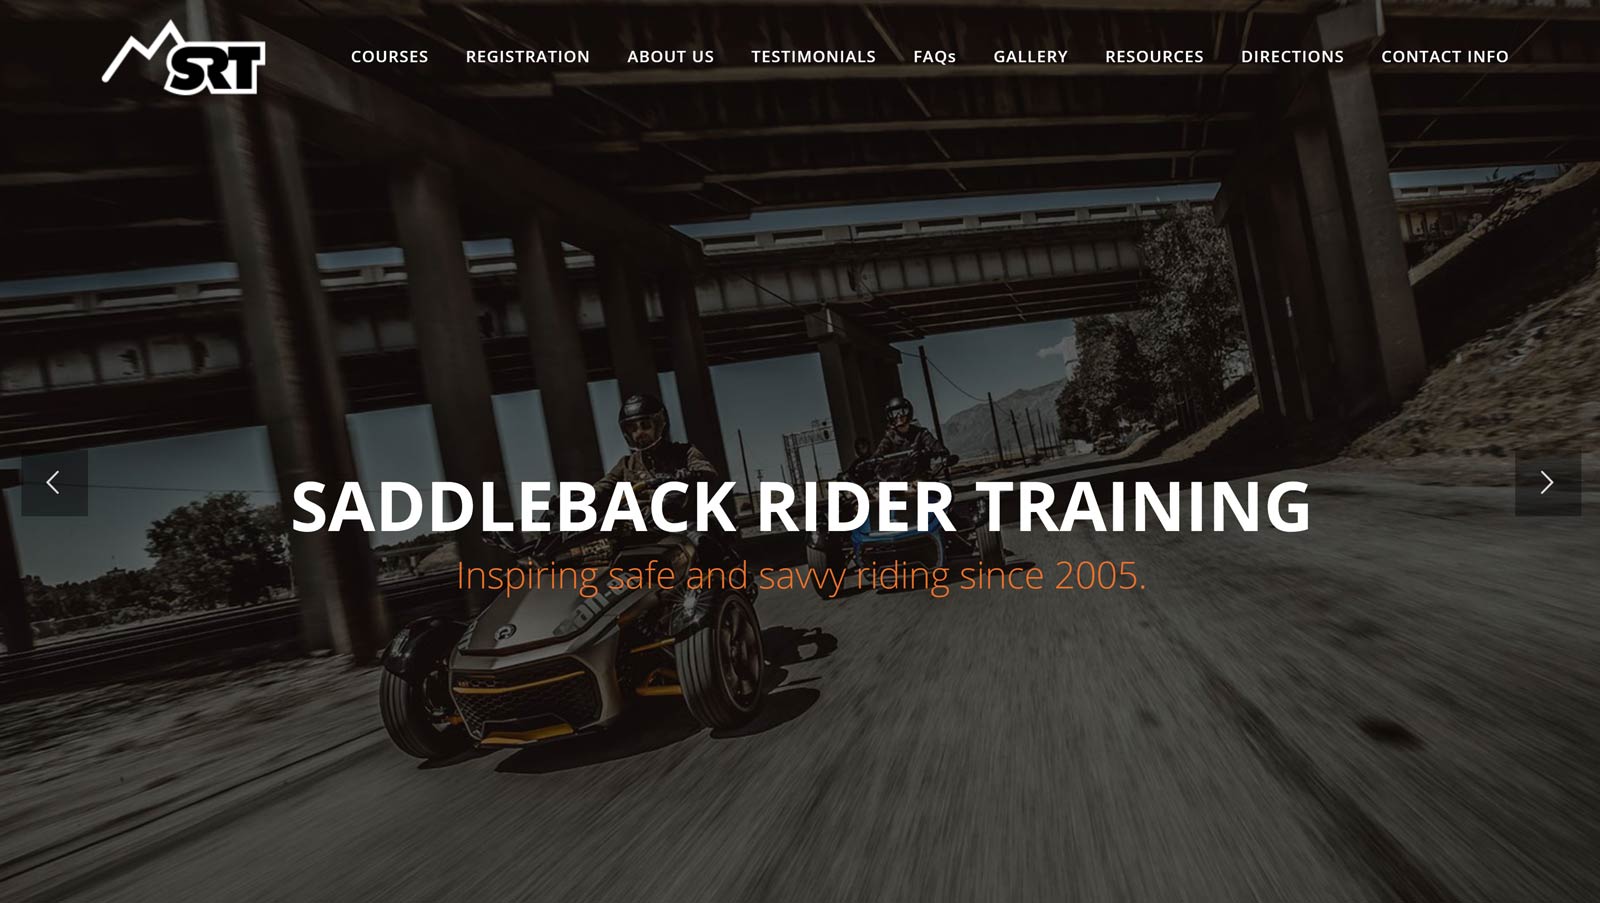 Saddleback Rider Training